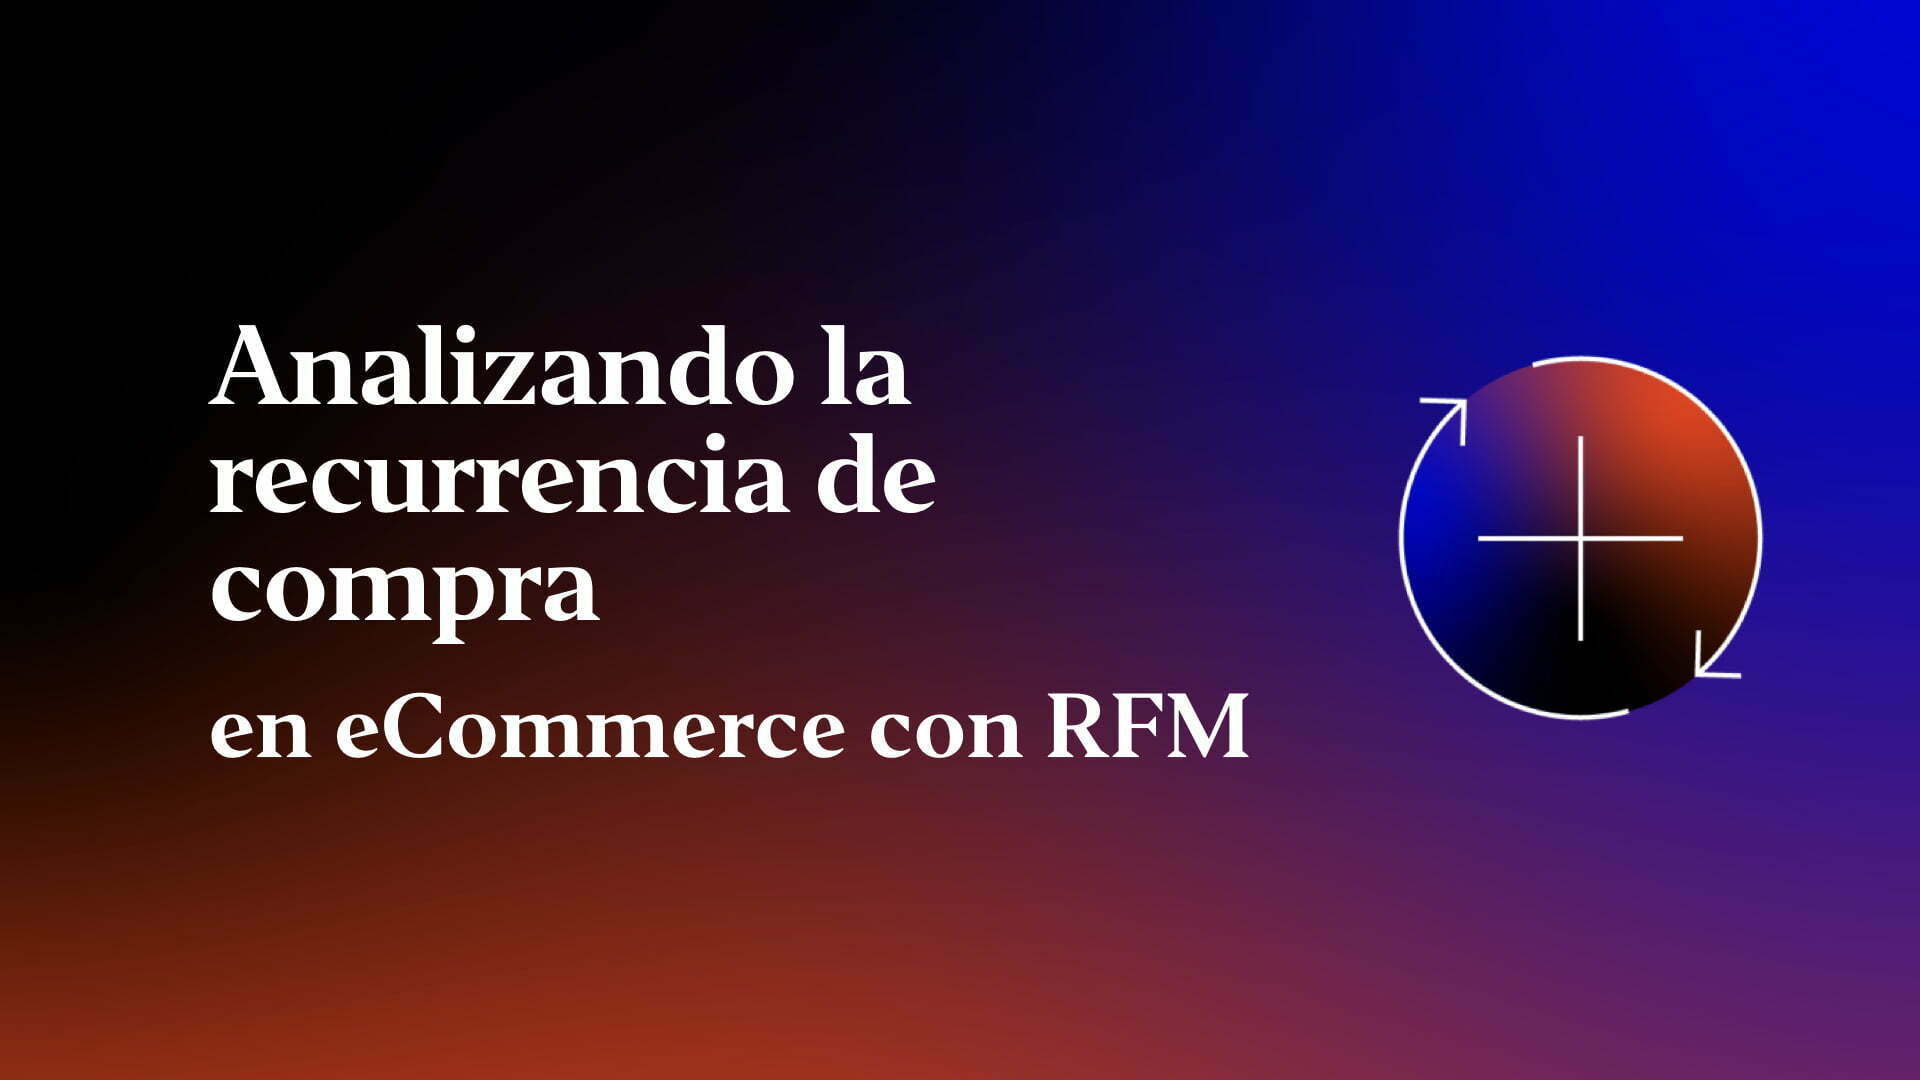 Analizando la recurrencia de compra en eCommerce con RFM